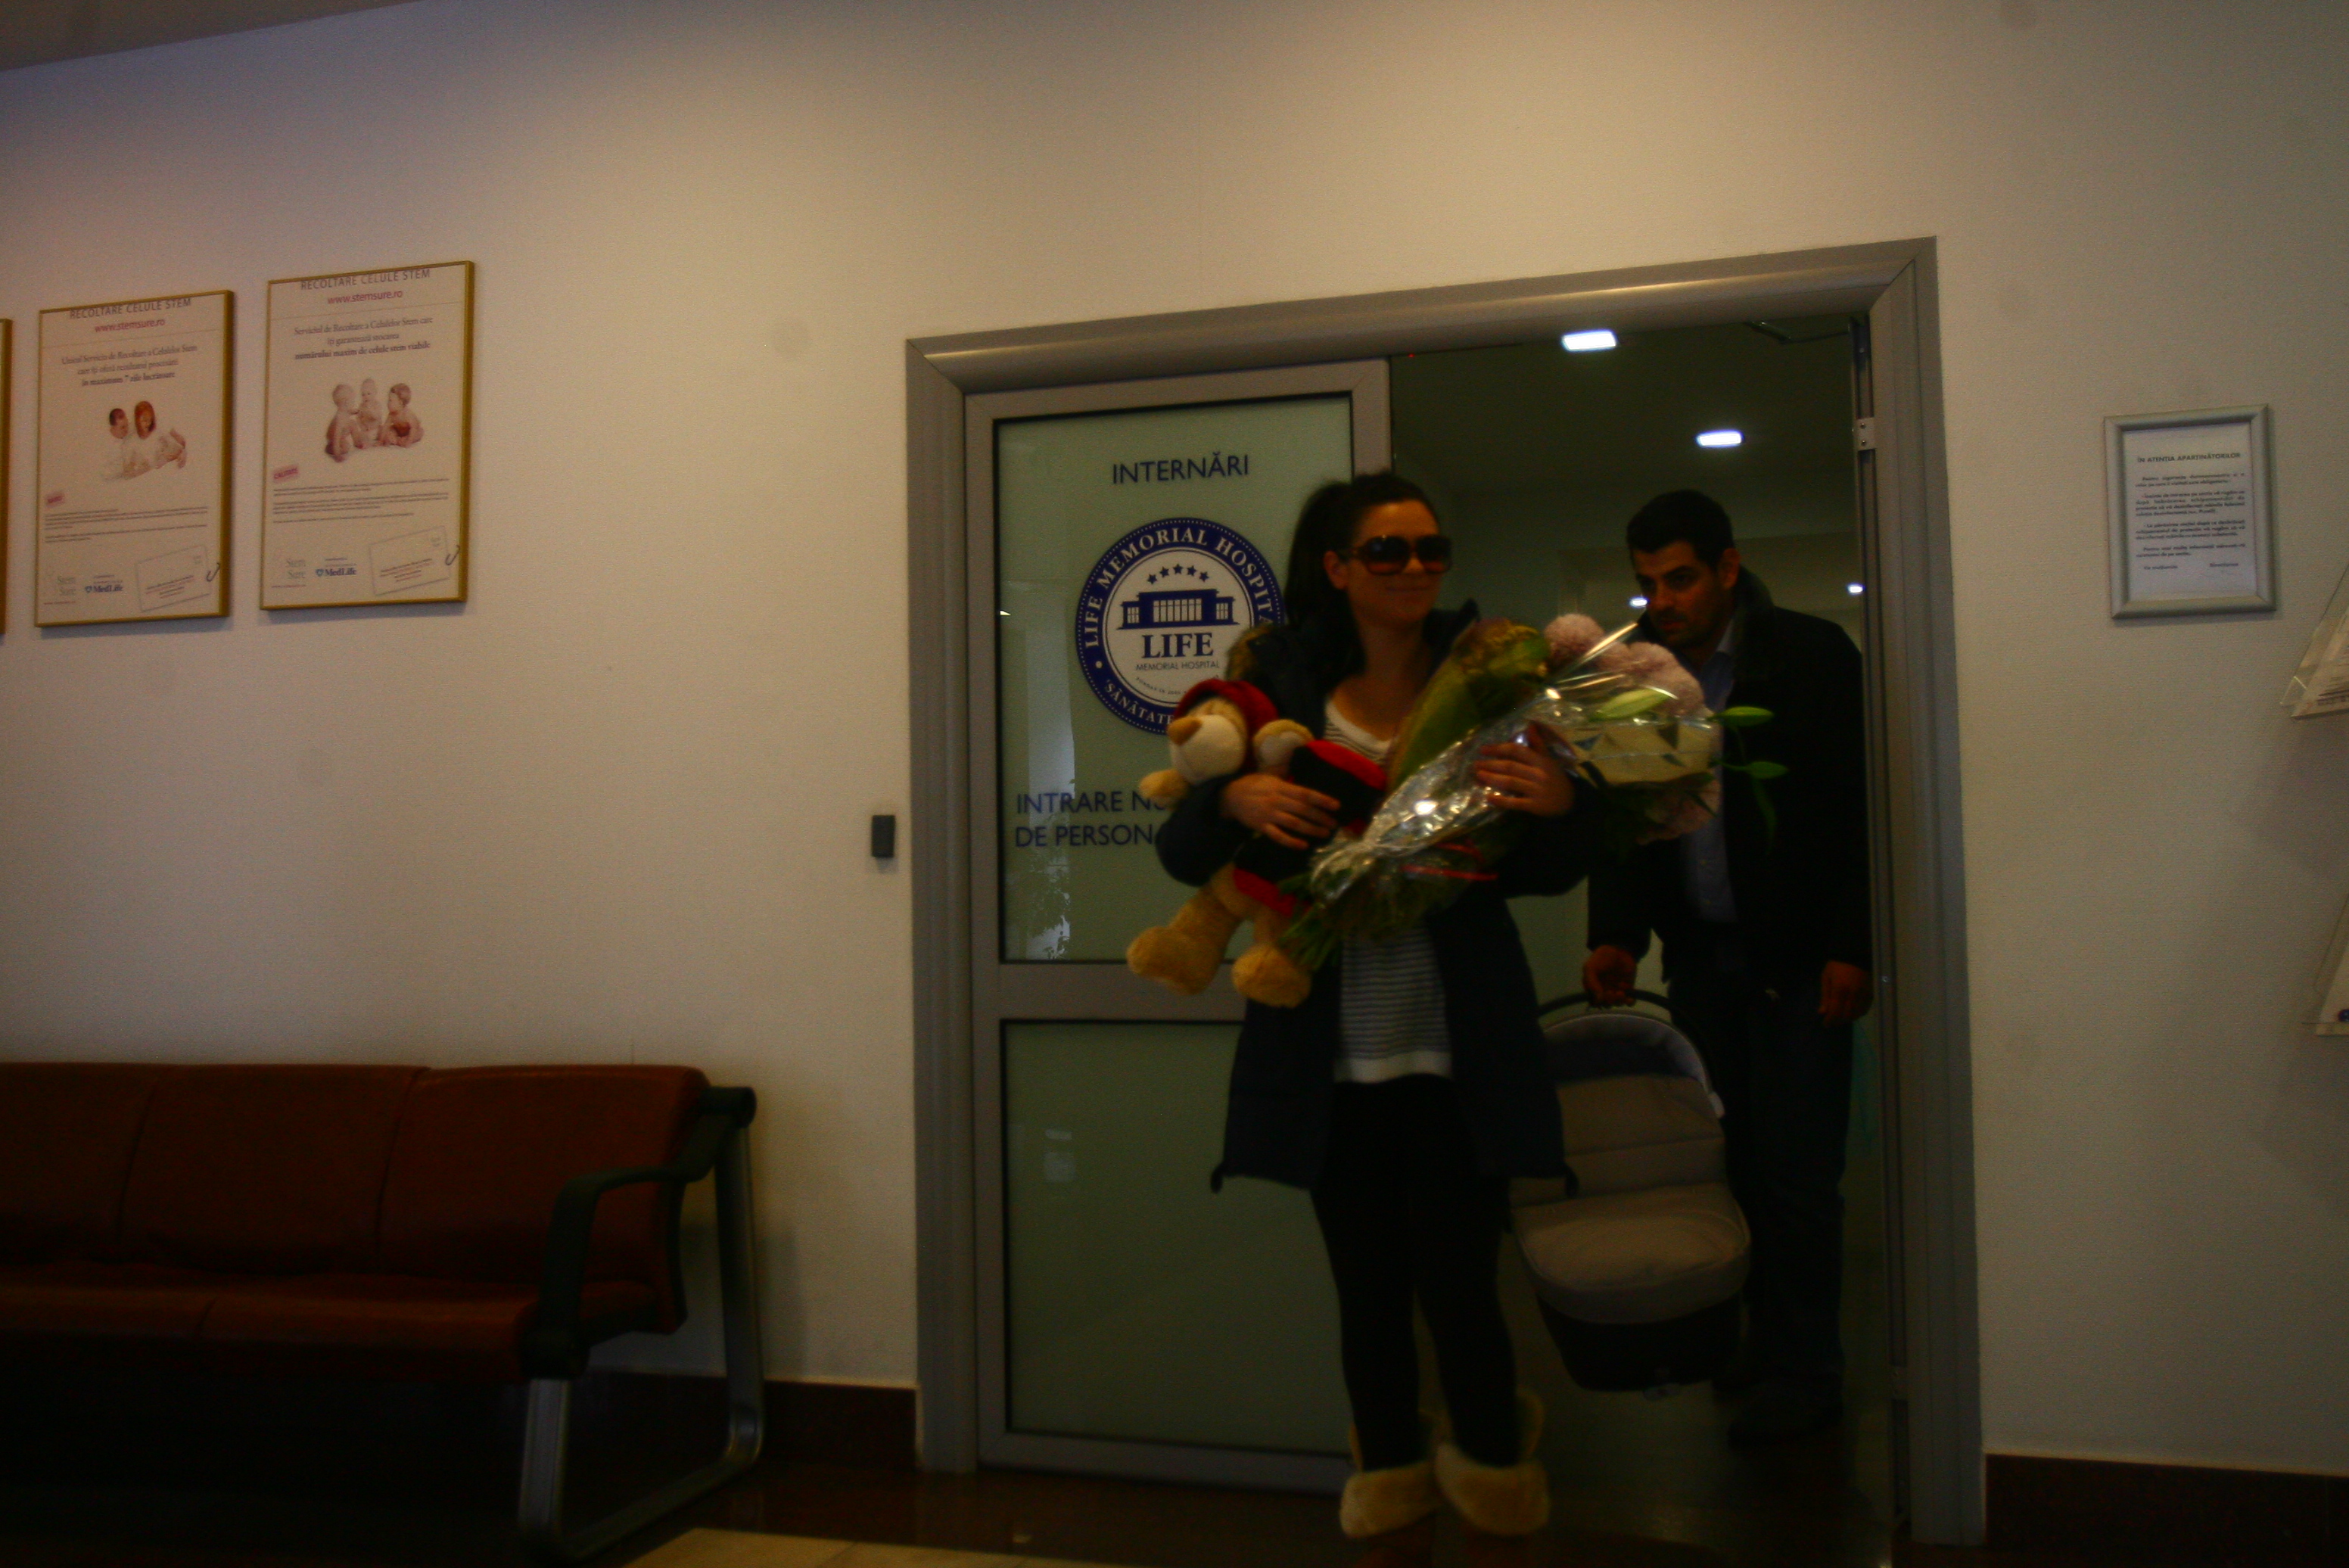 Fotografii şi declaraţii exclusive! Intră aici să vezi primele imagini cu Ellie White şi băieţelul ei în spital!